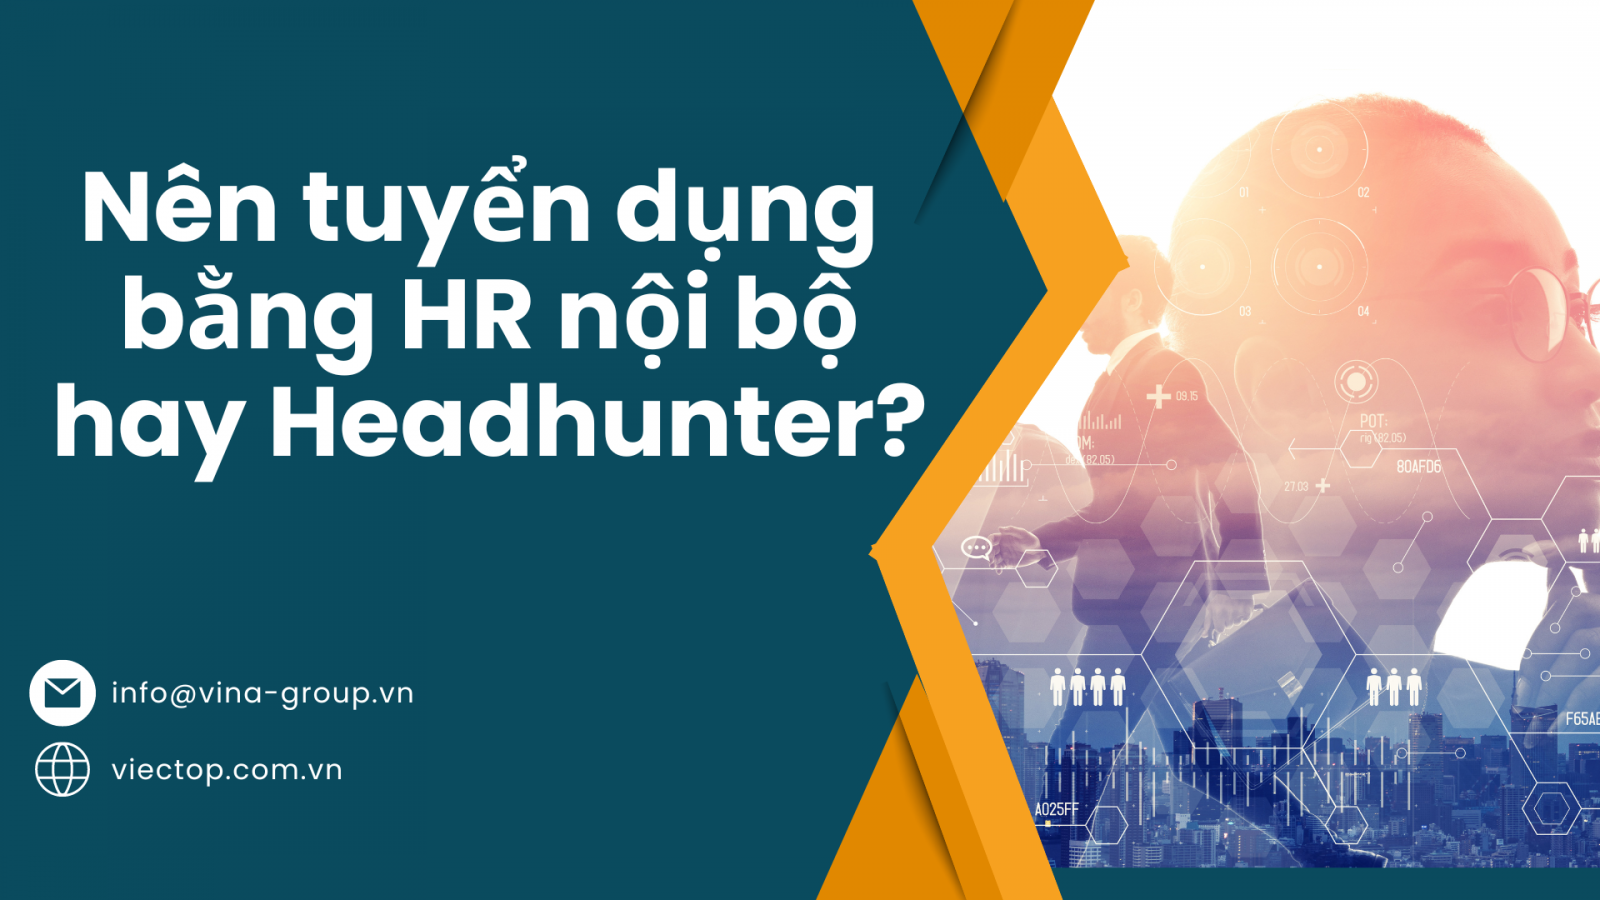 Tuyển dụng bằng HR nội bộ hay Headhunter - Lựa chọn tuyển dụng hiệu quả trong suy thoái kinh tế